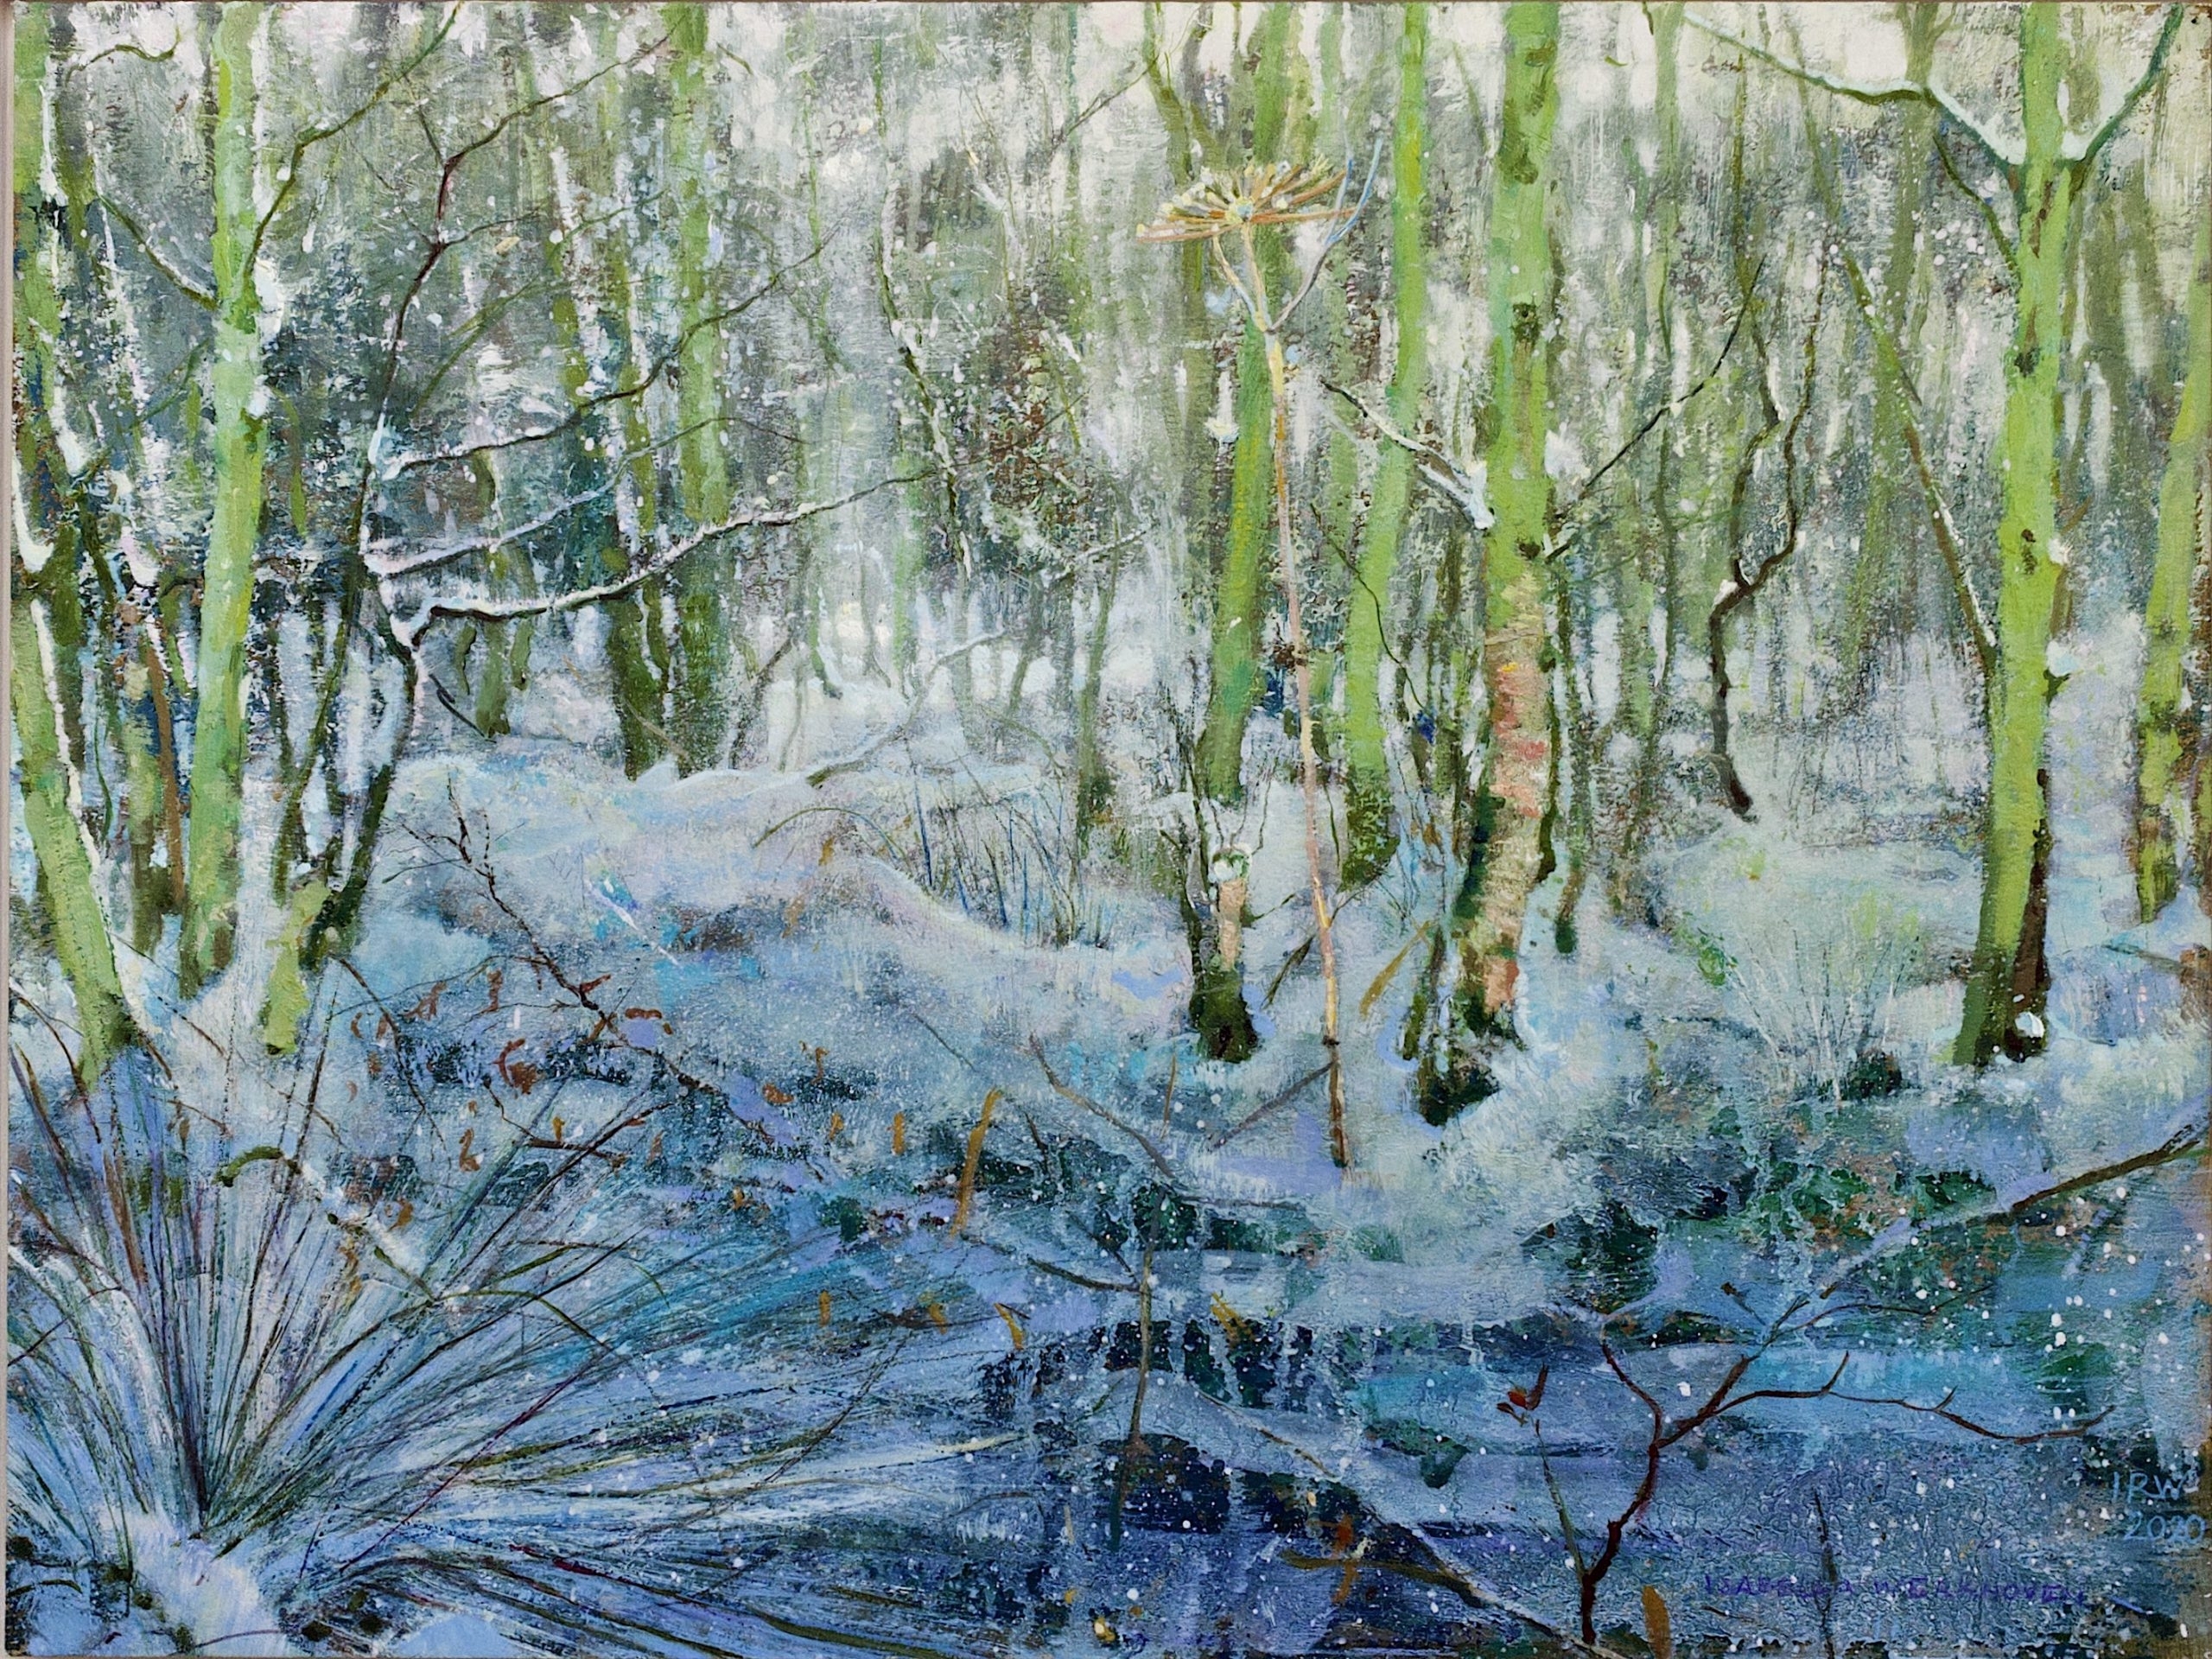 berenklauw in sneeuw bos schilderij isabella werkhoven